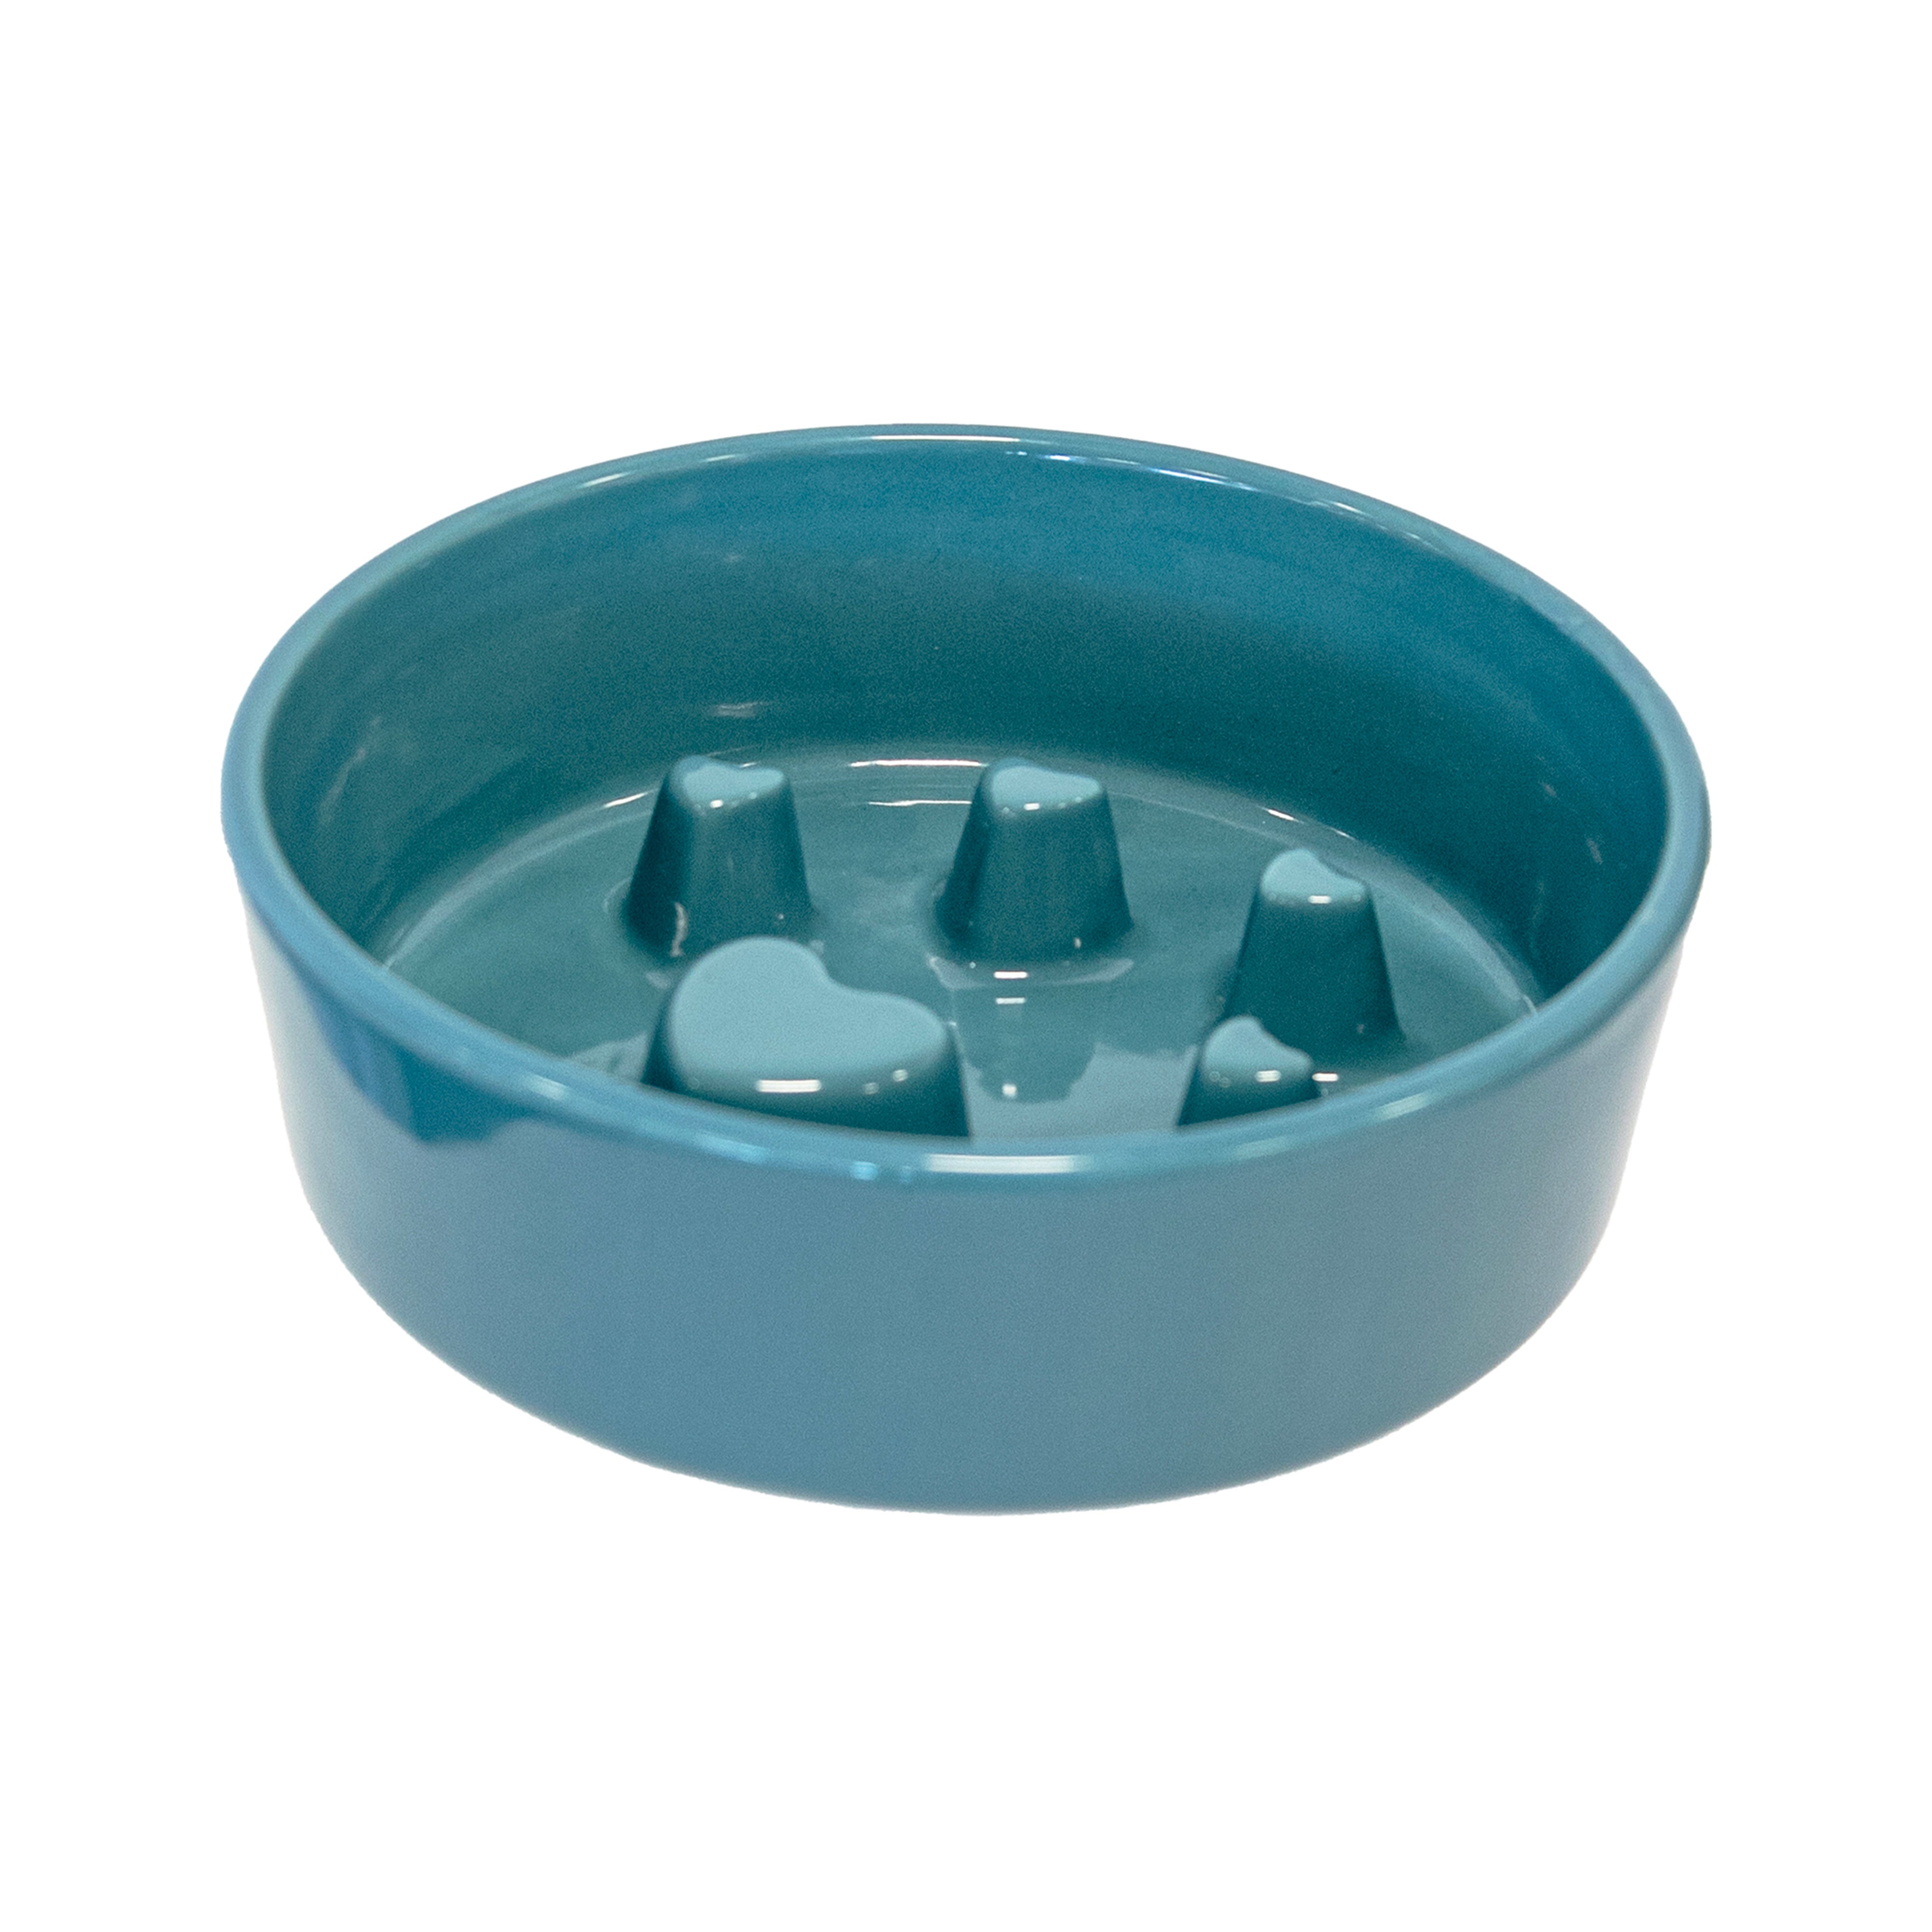 Ceramic Slow Feeder Dog Bowl Teal Blue